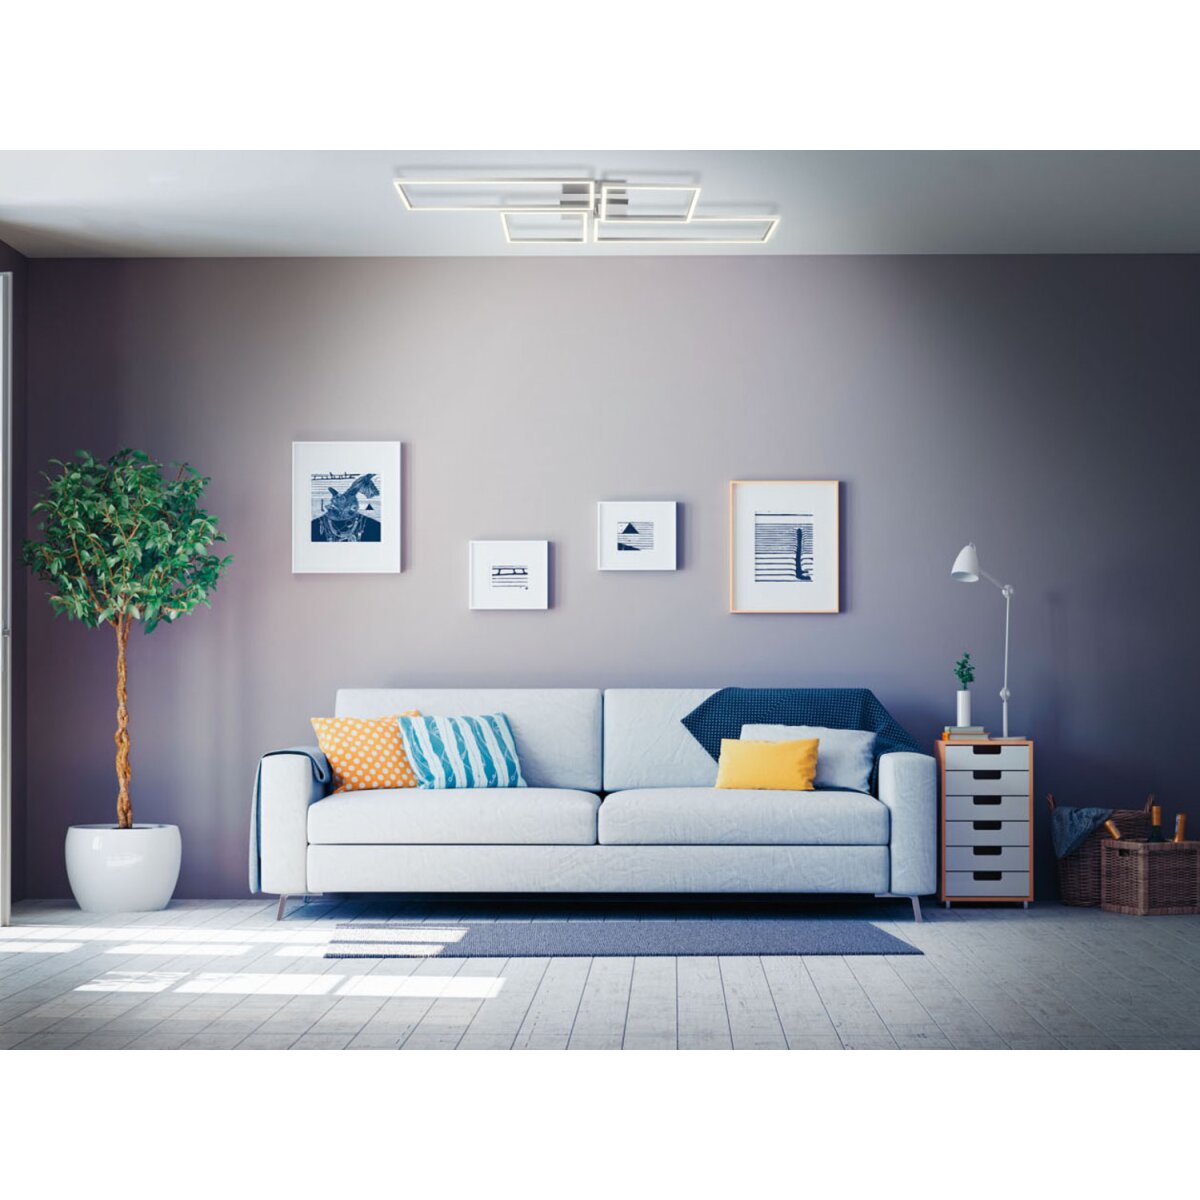 Livarno Home Deckenleuchte, mit Lichtfarbensteuerung »Zigbee Smart Home« -  B-Ware sehr gut, 50,99 €